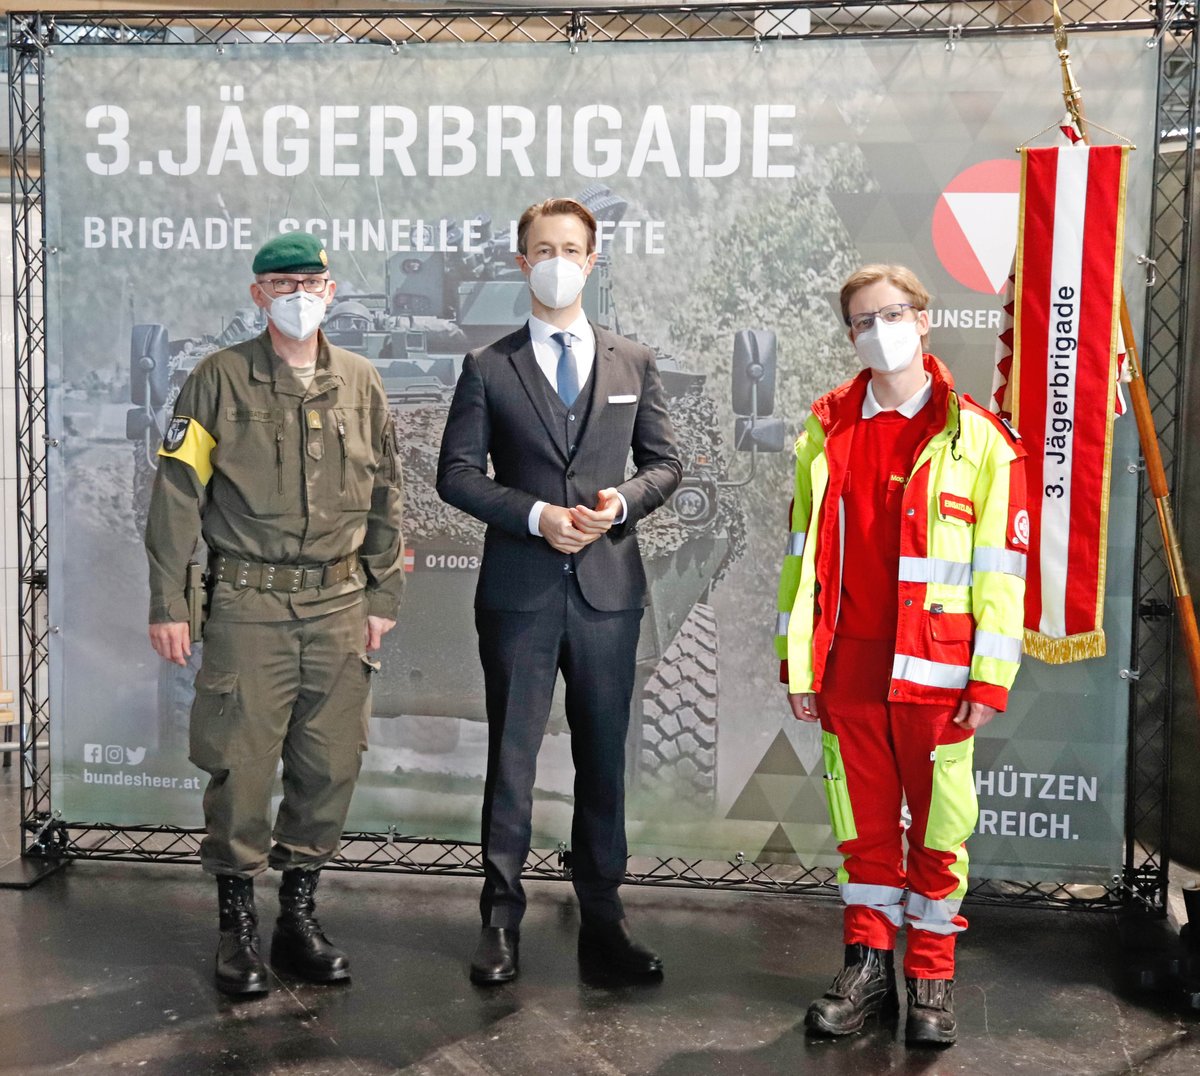 Heute ließen sich #Bundeskanzler #SebastianKurz, #Finanzminister #GernotBlümel und der #Bürgermeister #MichaelLudwig in der Messe Wien testen. 
#Bundesheer #3Jägerbrigade